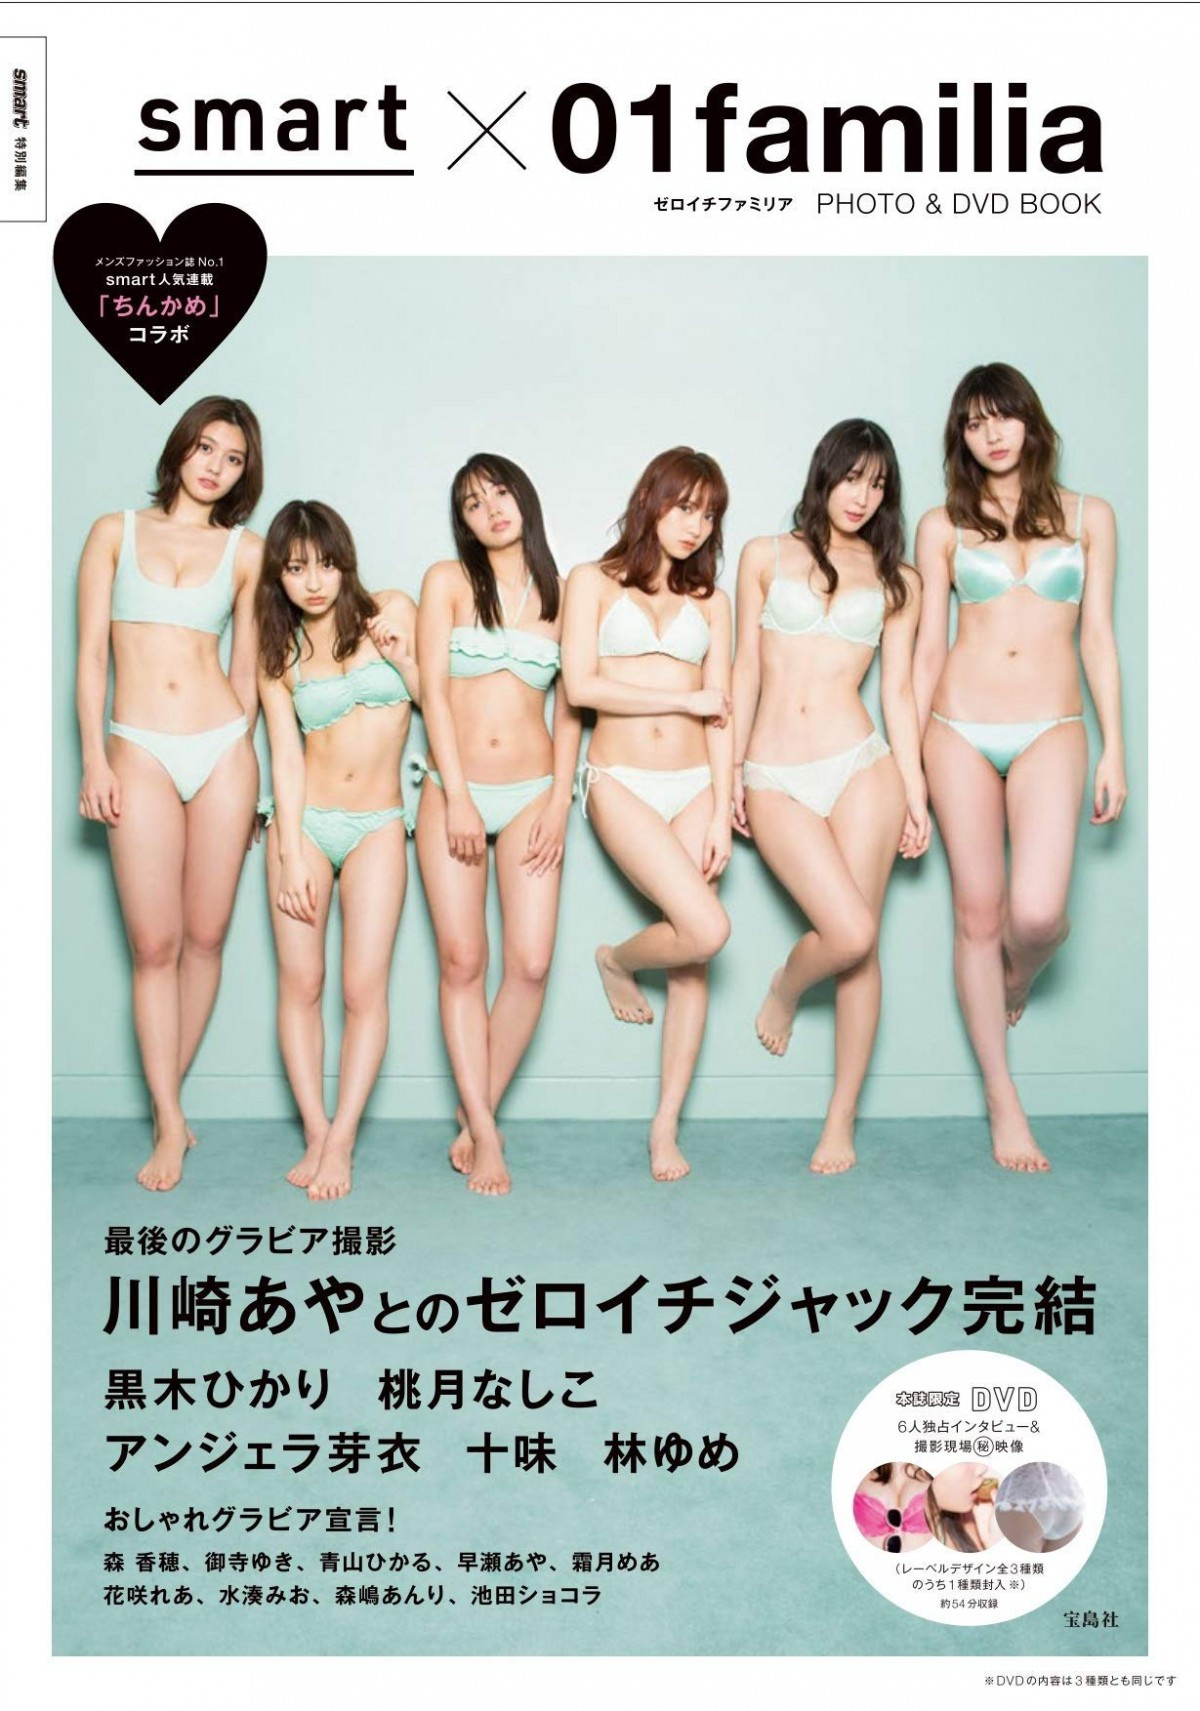 引退の川崎あやさんほか ゼロイチファミリア 美女勢ぞろいのフォトブック 写真集 6位 Oricon News